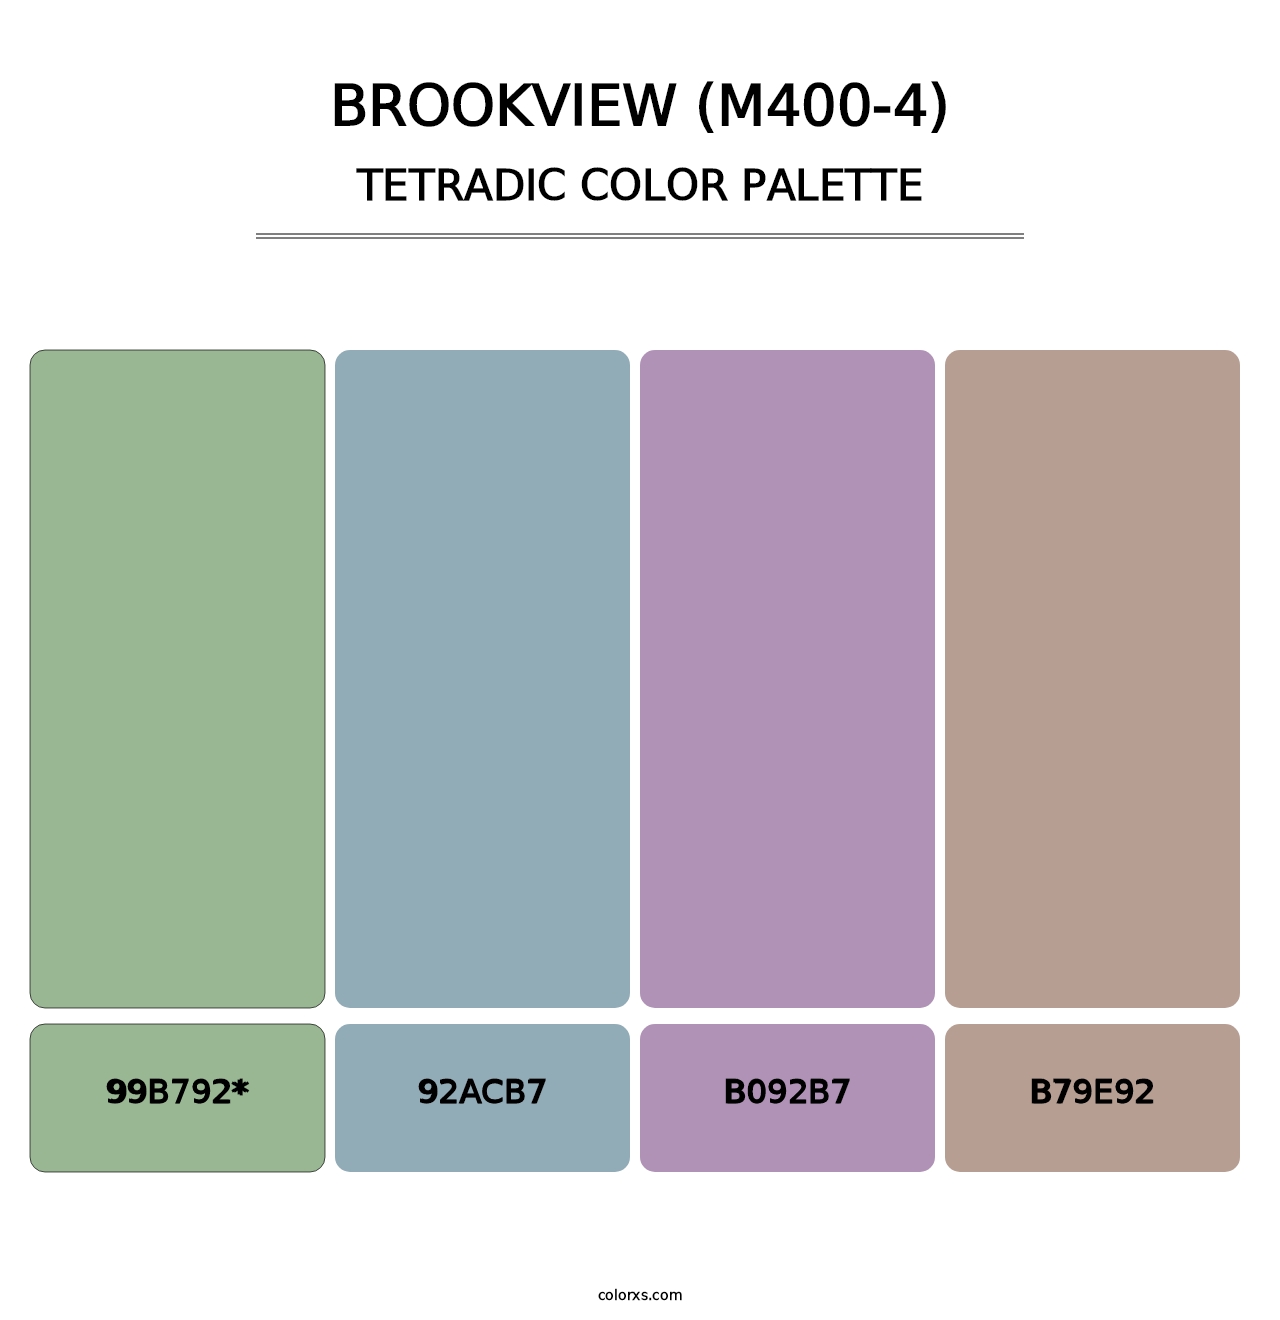 Brookview (M400-4) - Tetradic Color Palette